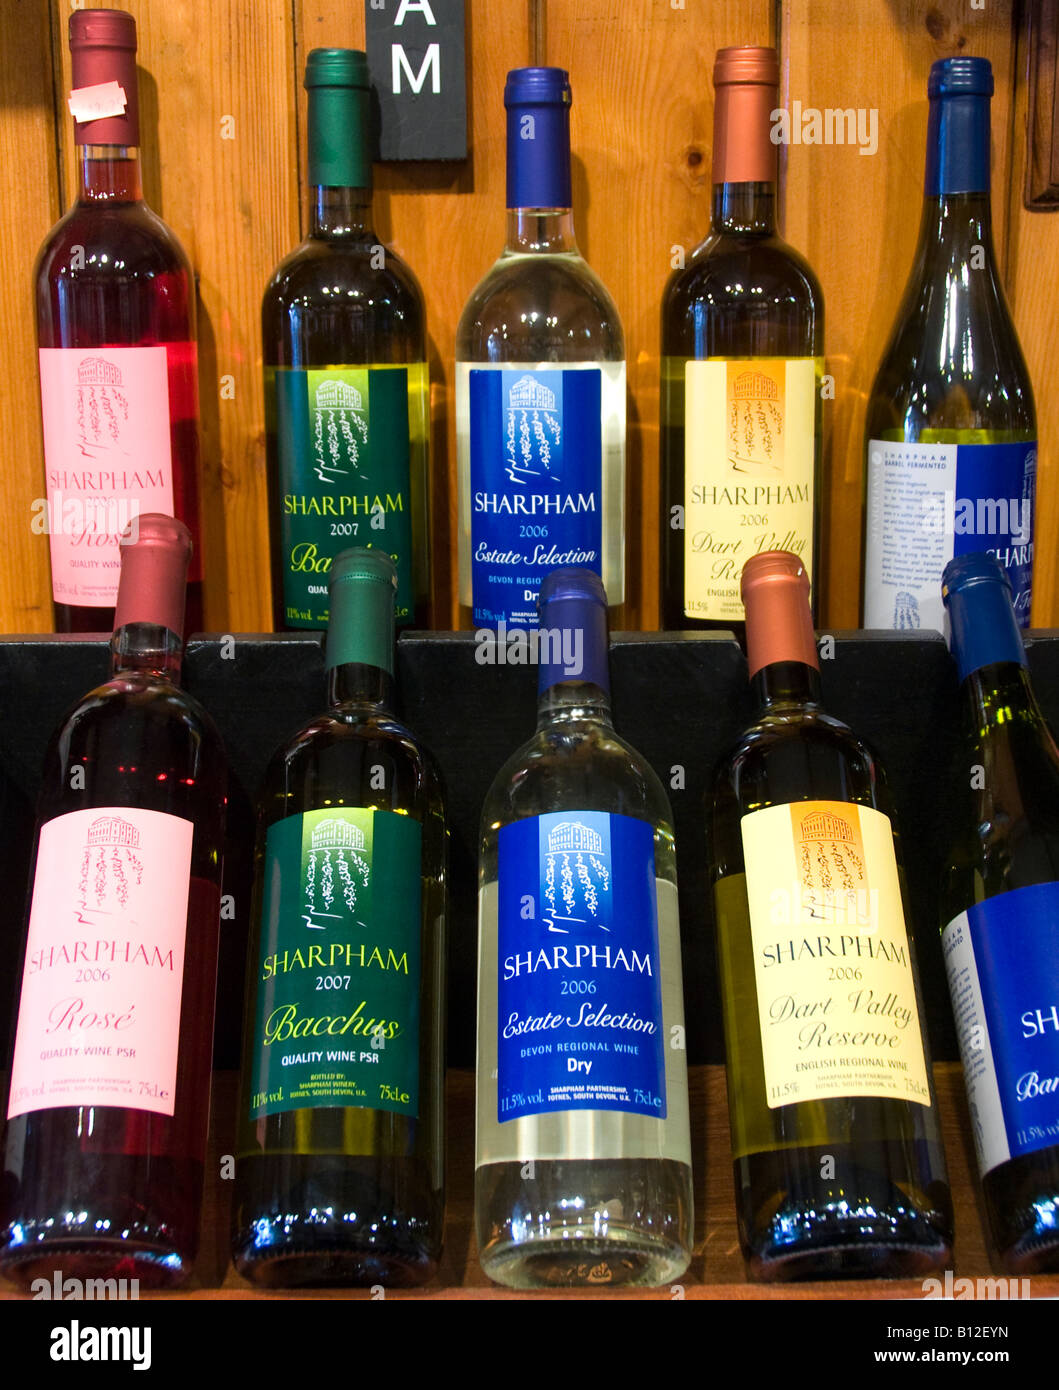 Sharpham Devon wine bottles on display in a shop Stock Photo